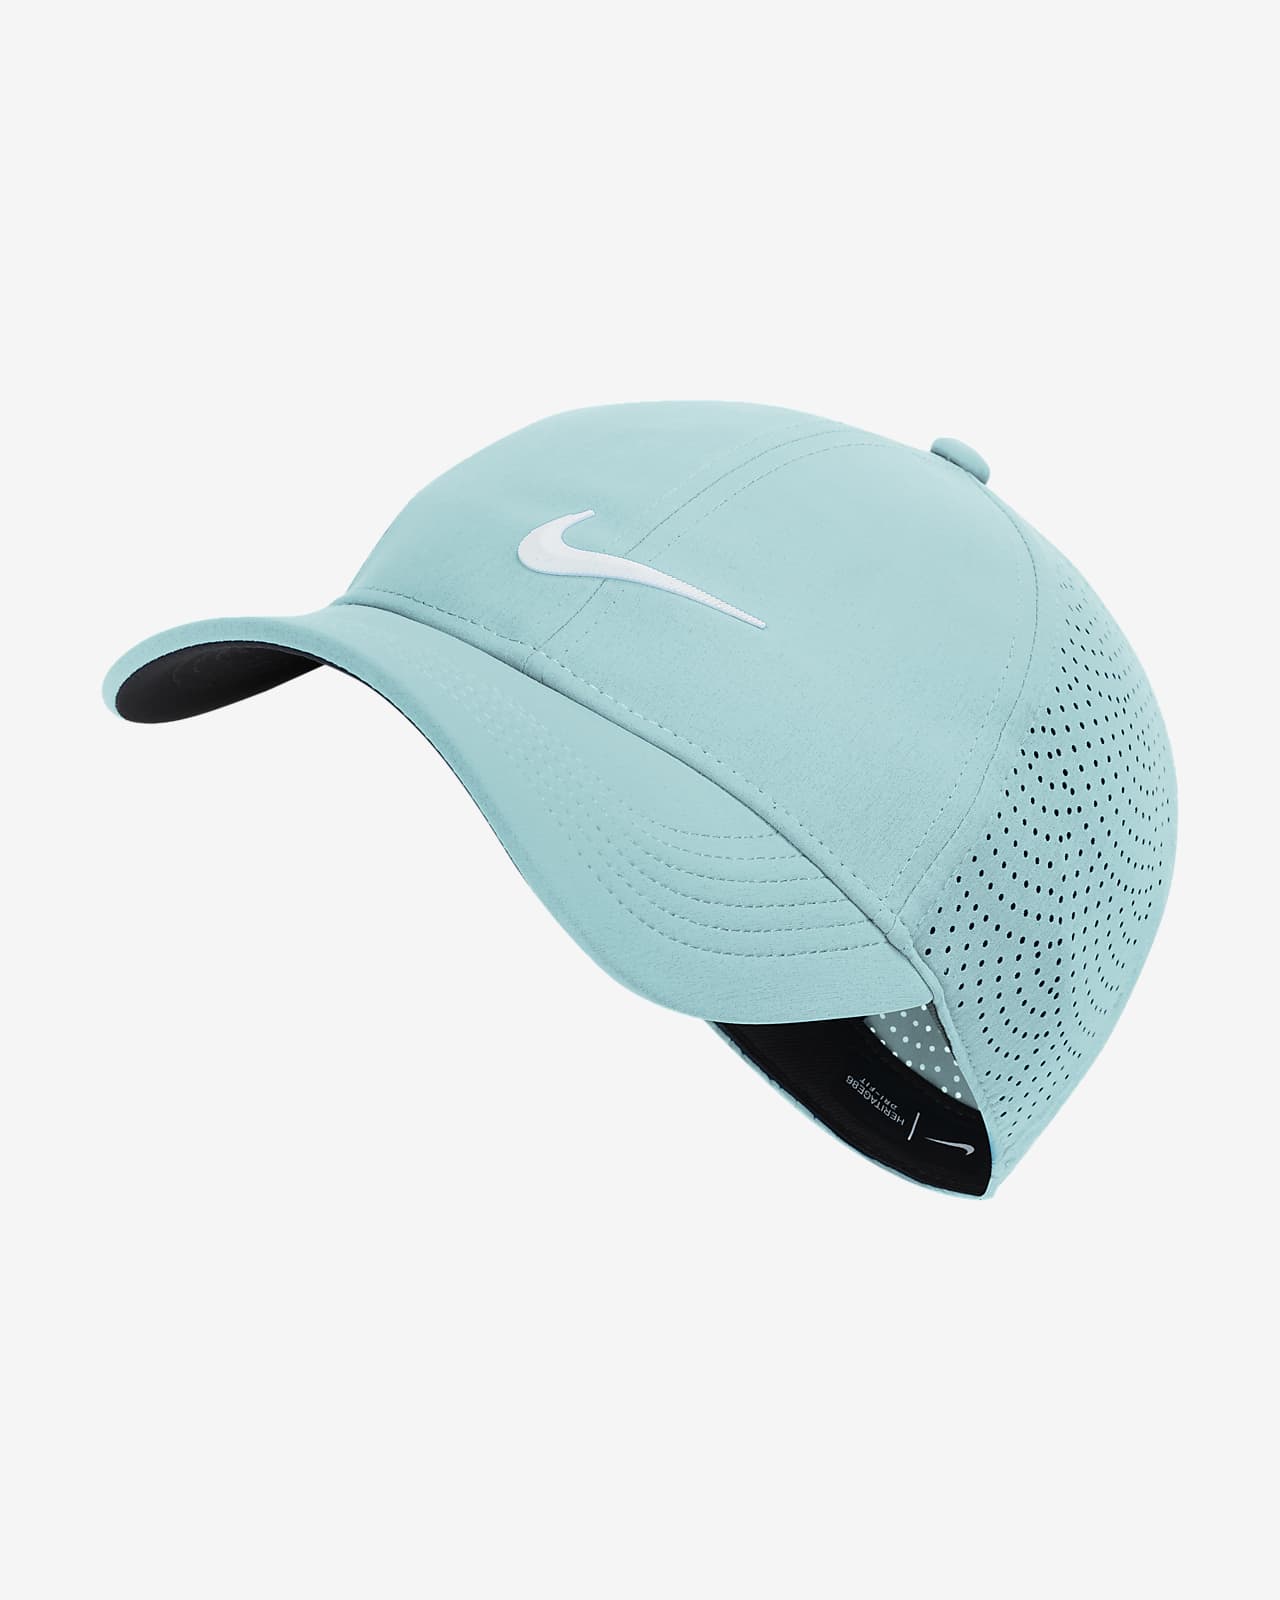 nike women's 2020 aerobill golf visor